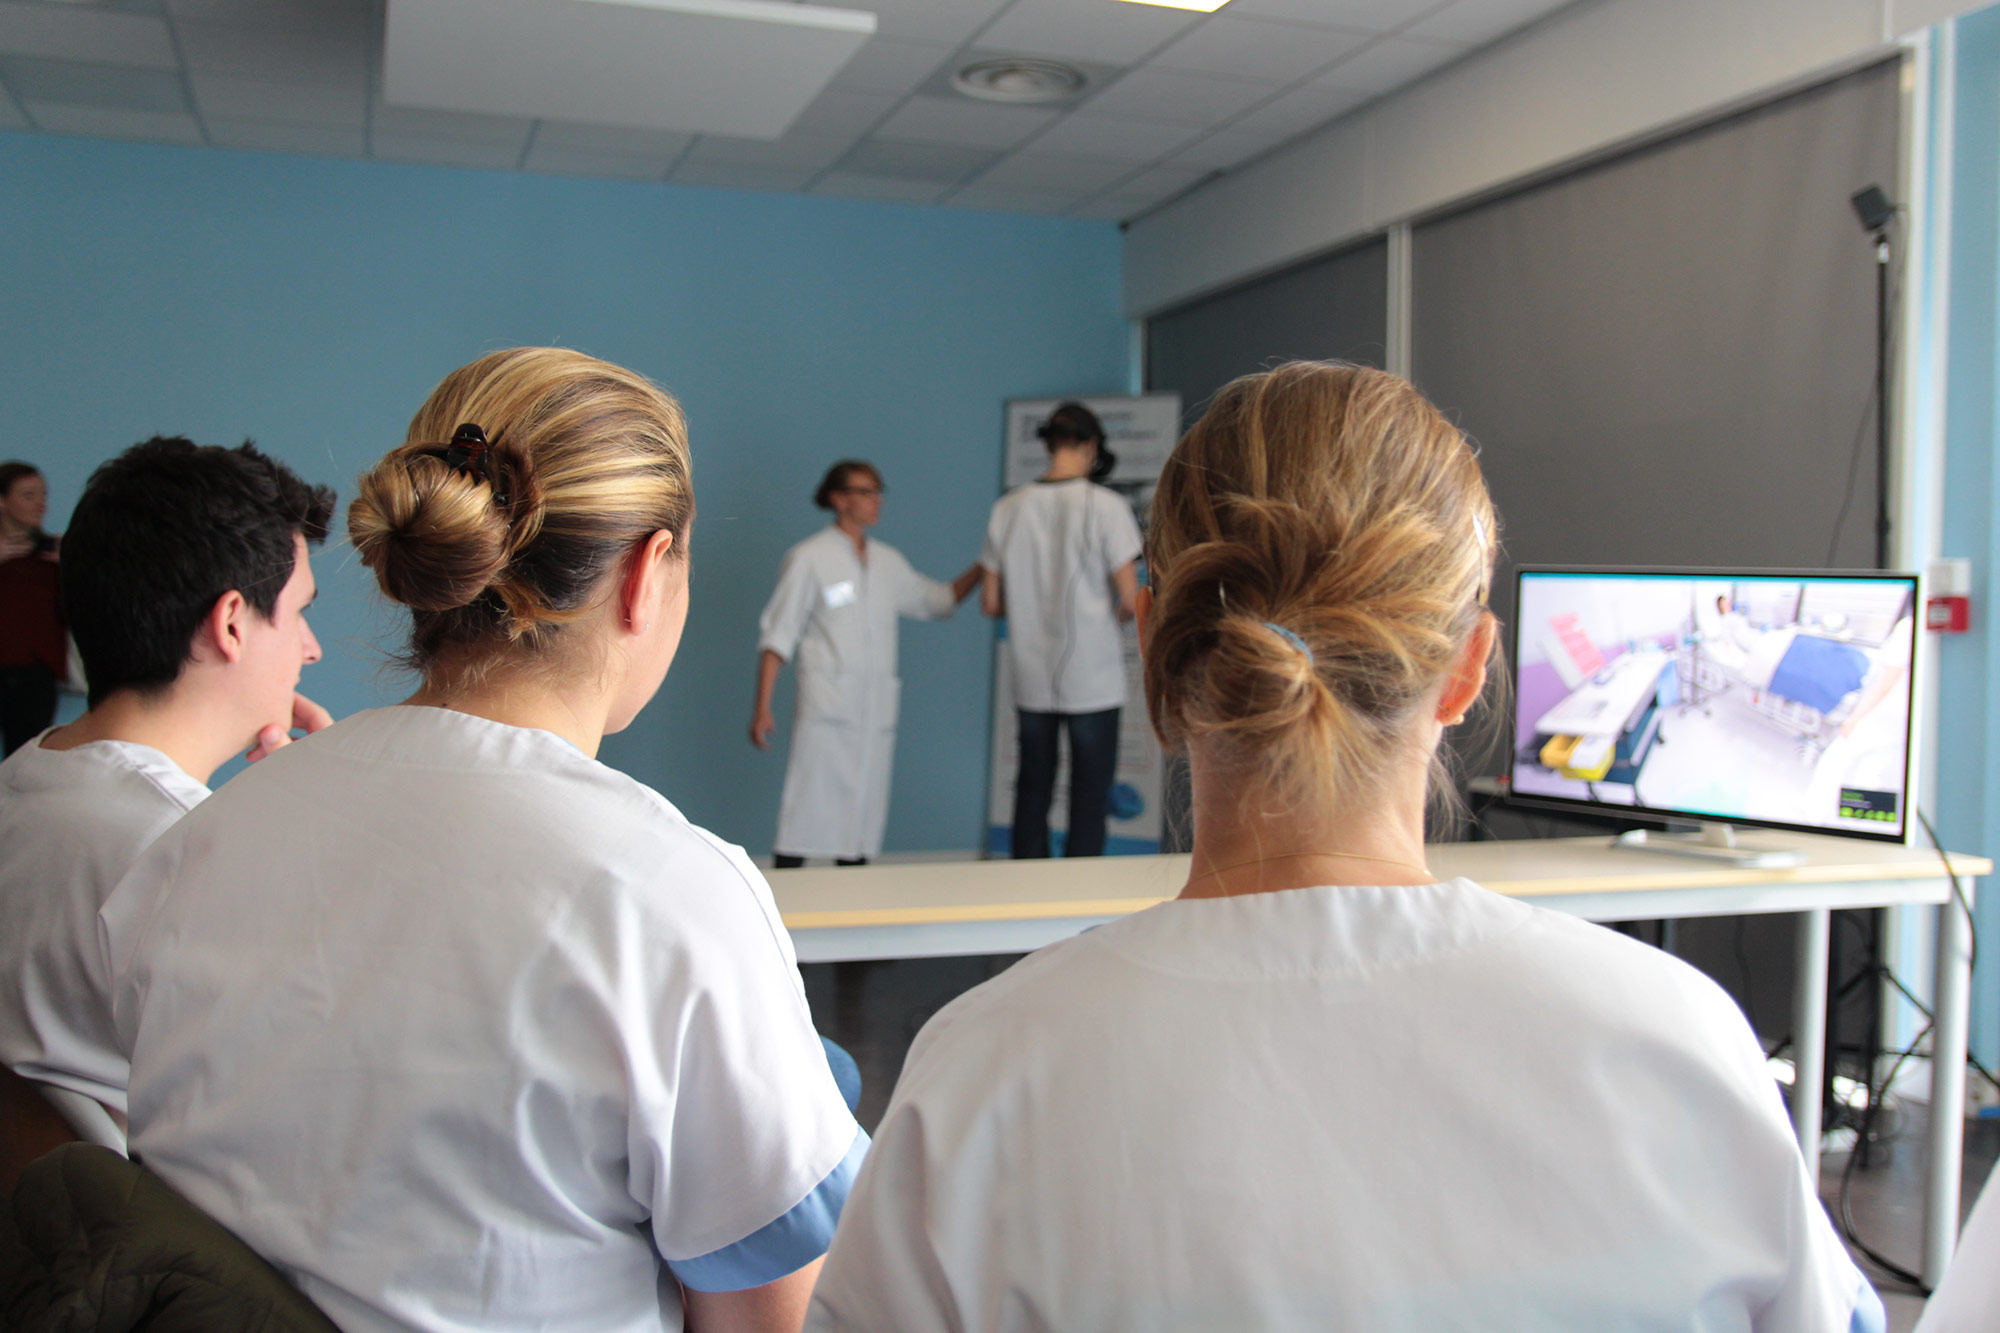 Groupe d'étudiant infirmiers qui regarde un camarade réalisant la procédure d'un acte transfusionnel en réalité virtuelle